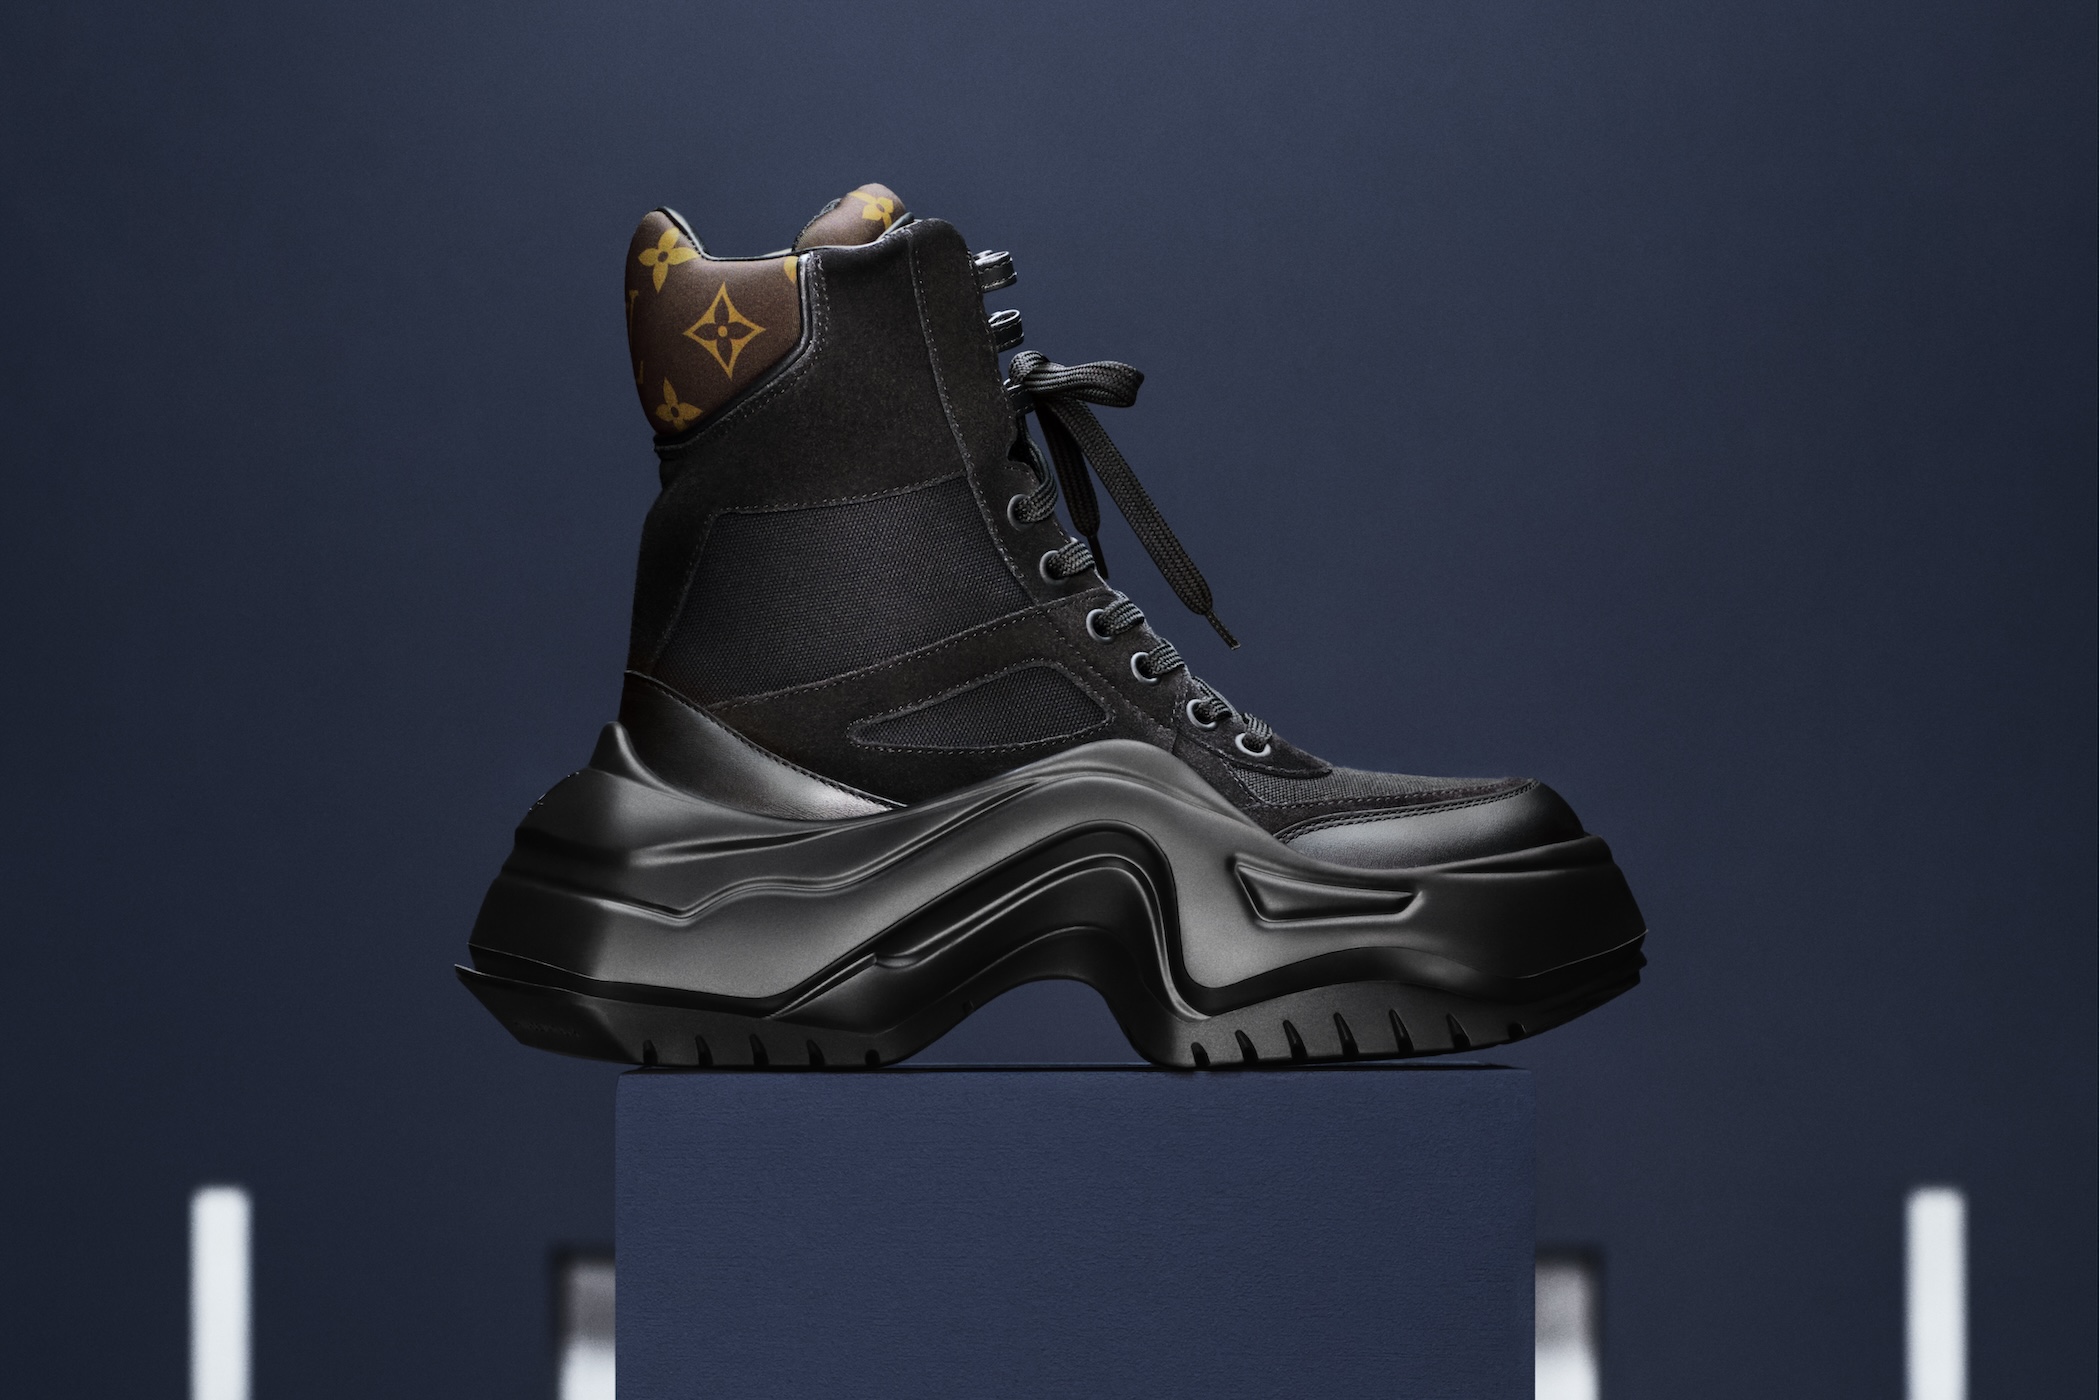 经典再造！Louis Vuitton 推出全新 LV Archlight 运动鞋系列